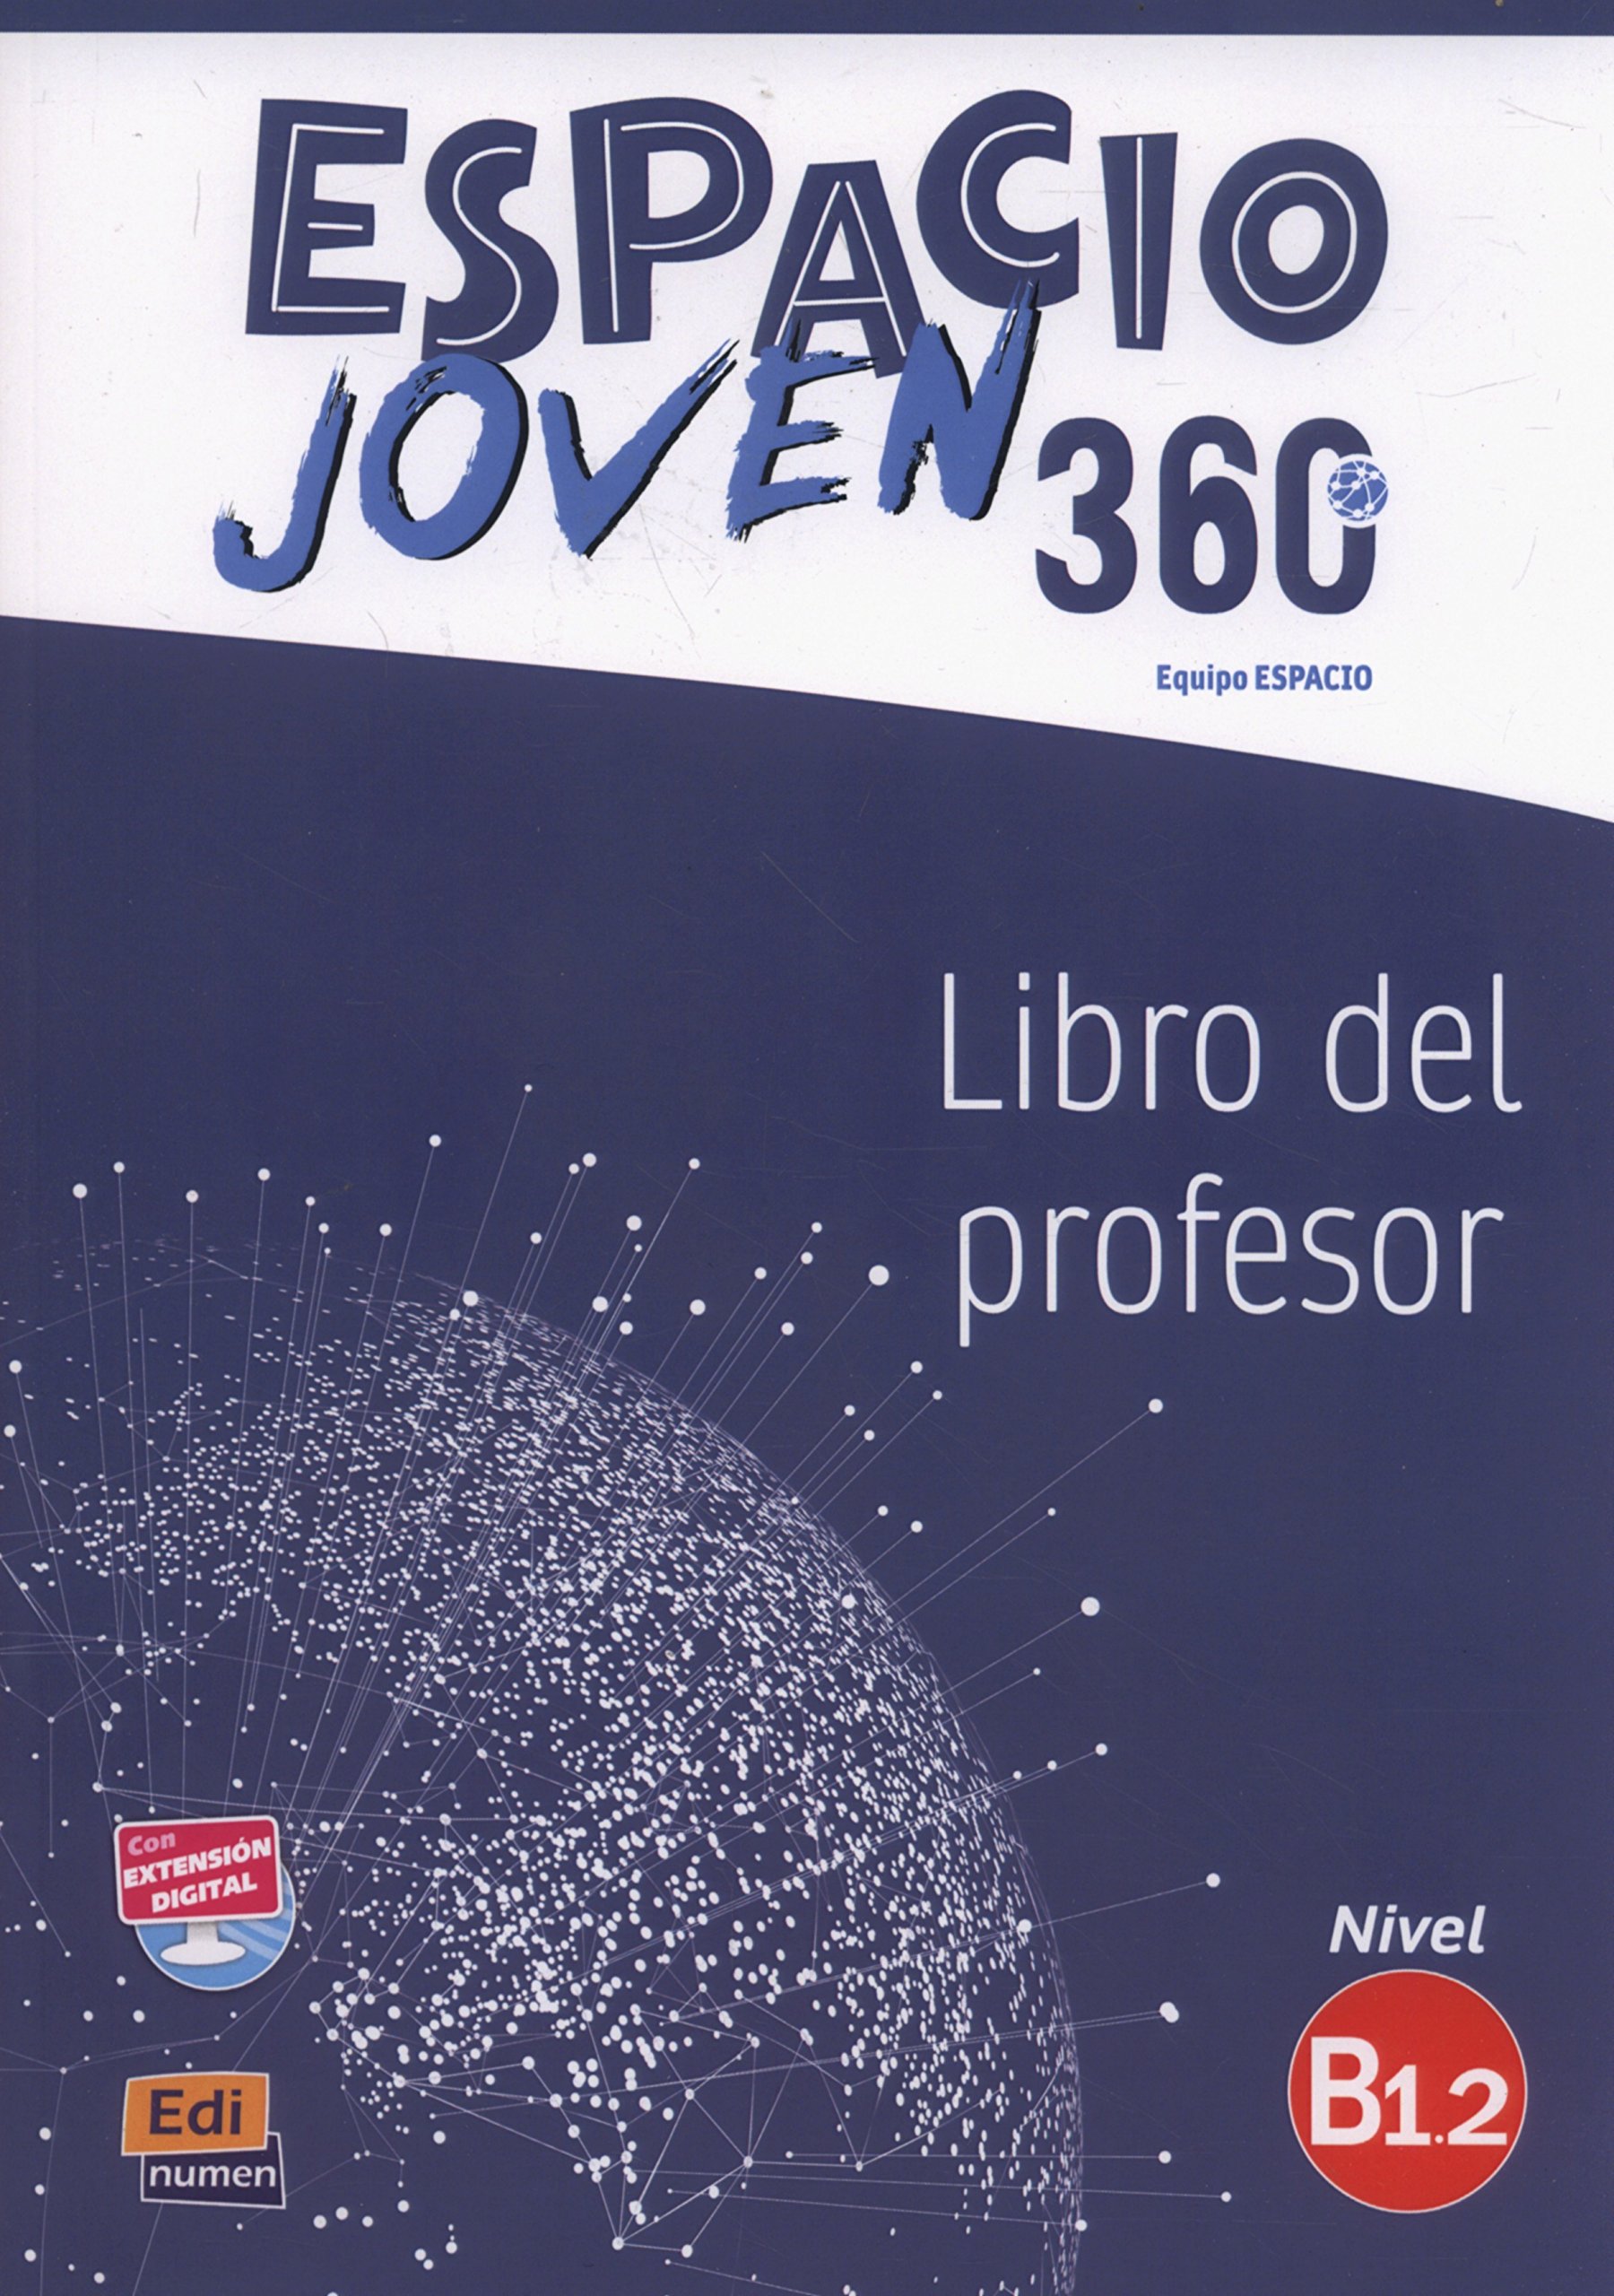 ESPACIO JOVEN 360 Nivel  B 1.2 Libro del profesor